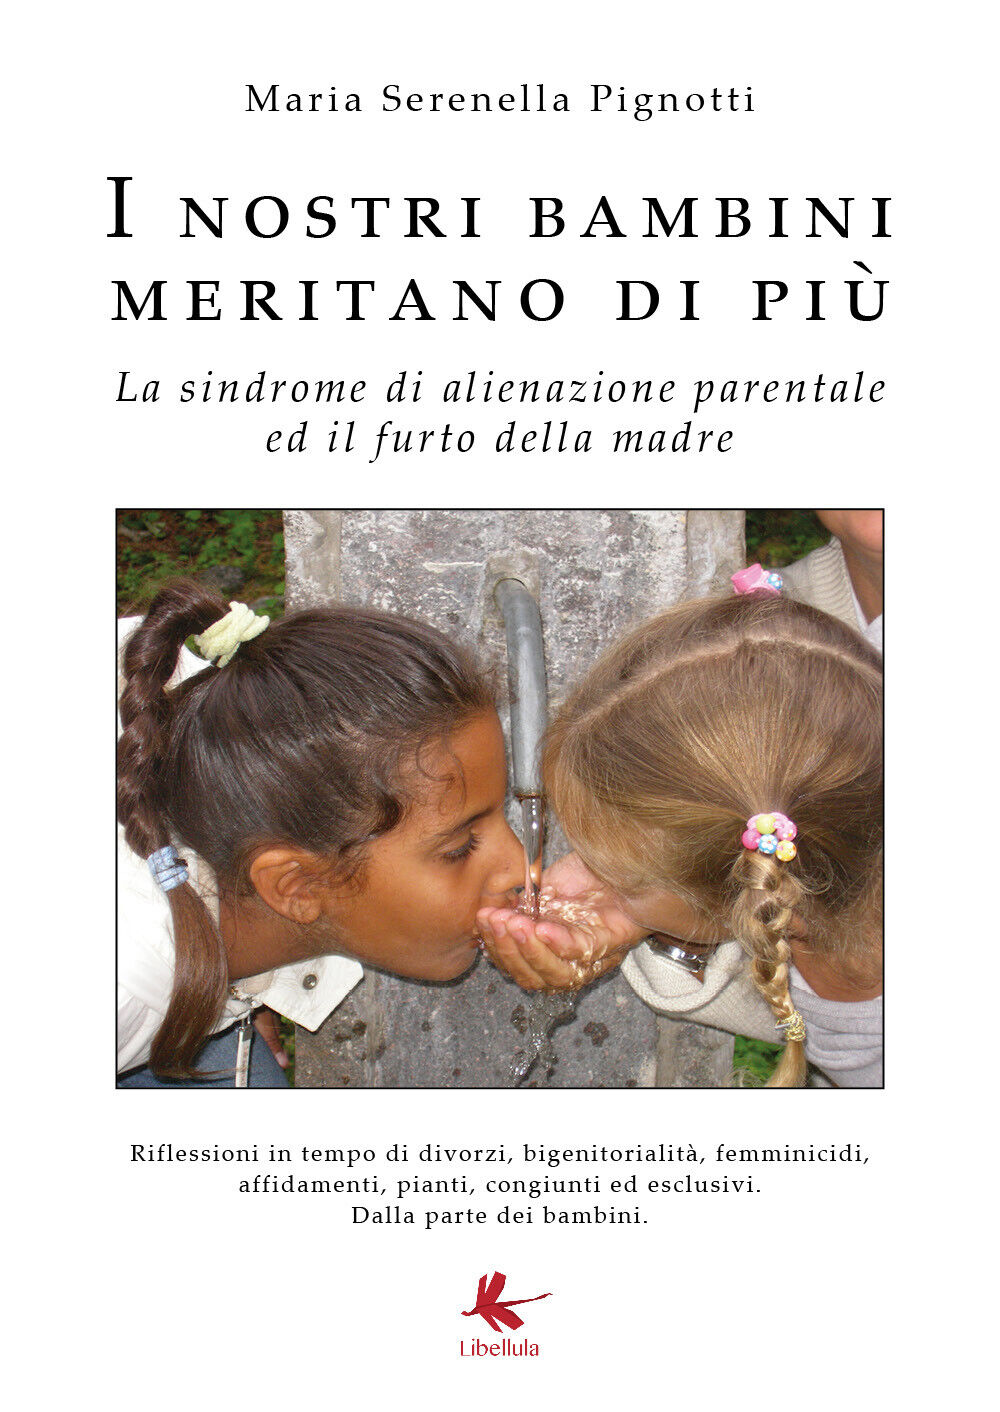 I nostri bambini meritano di pi? di Maria Serenella Pignotti,  2018,  Libellula  libro usato